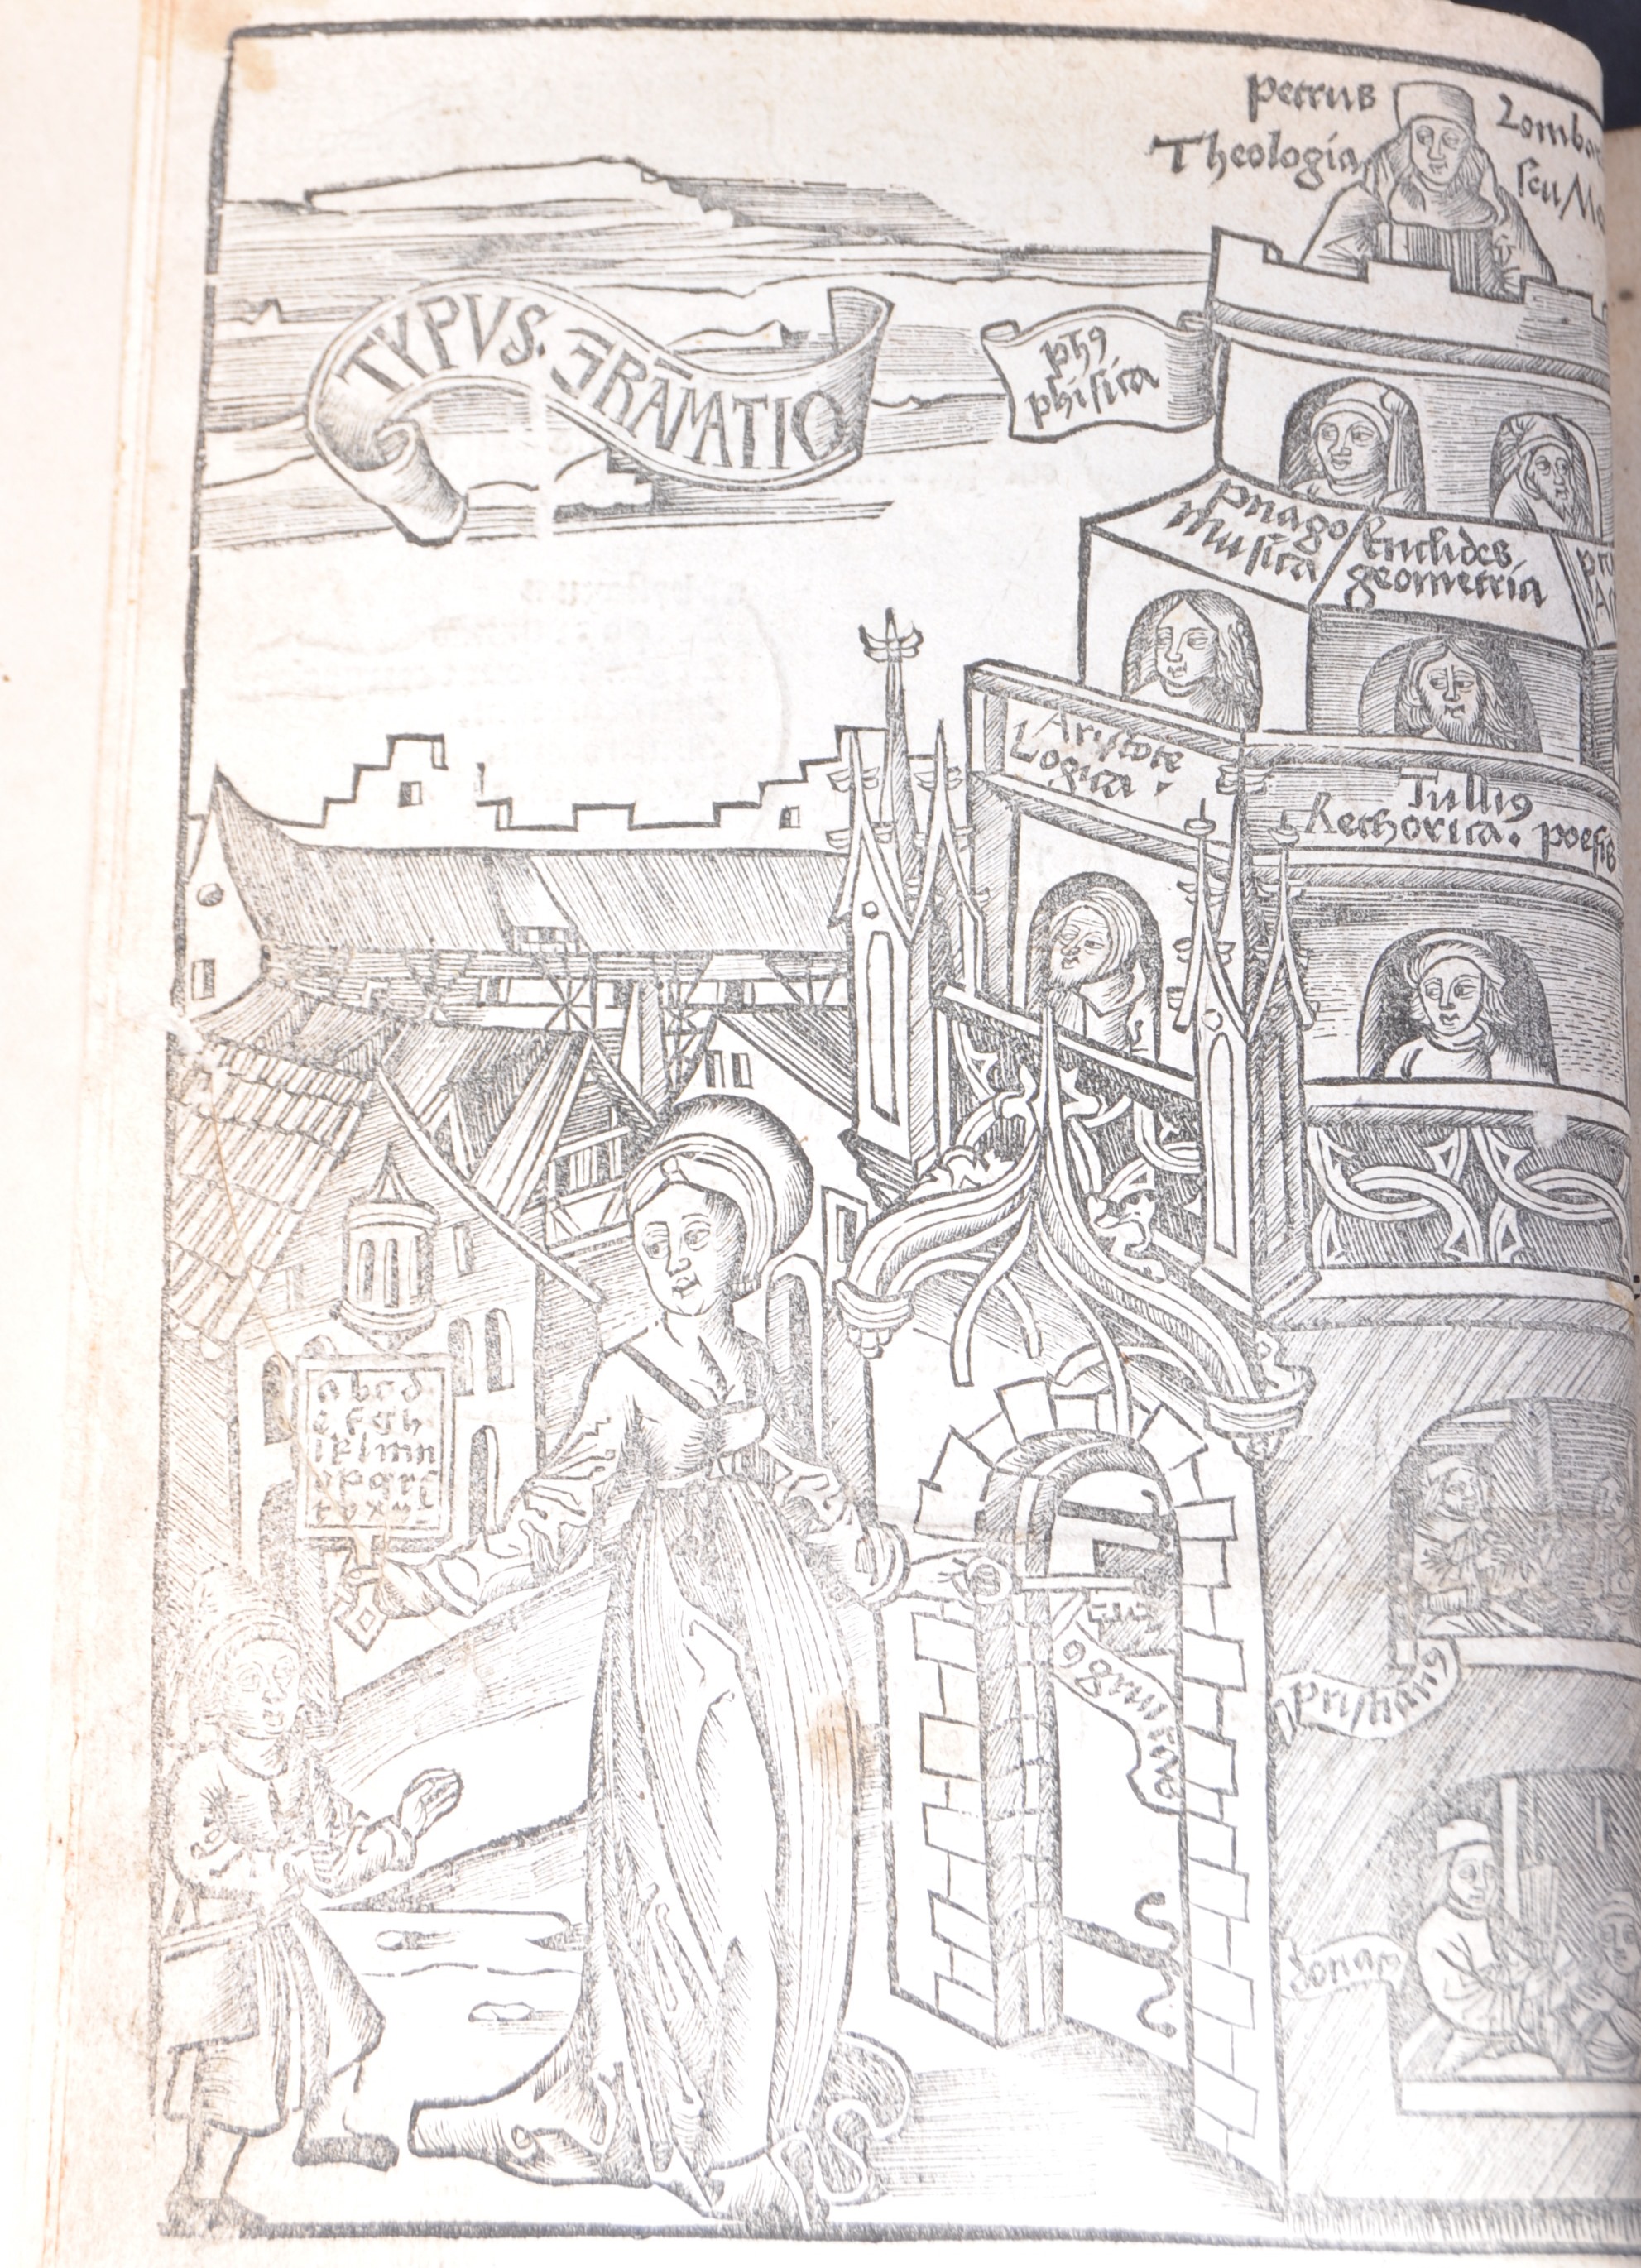 MARGARITA PHILOSOPHICA - GREGOR REISCH - 1512 - Image 10 of 10